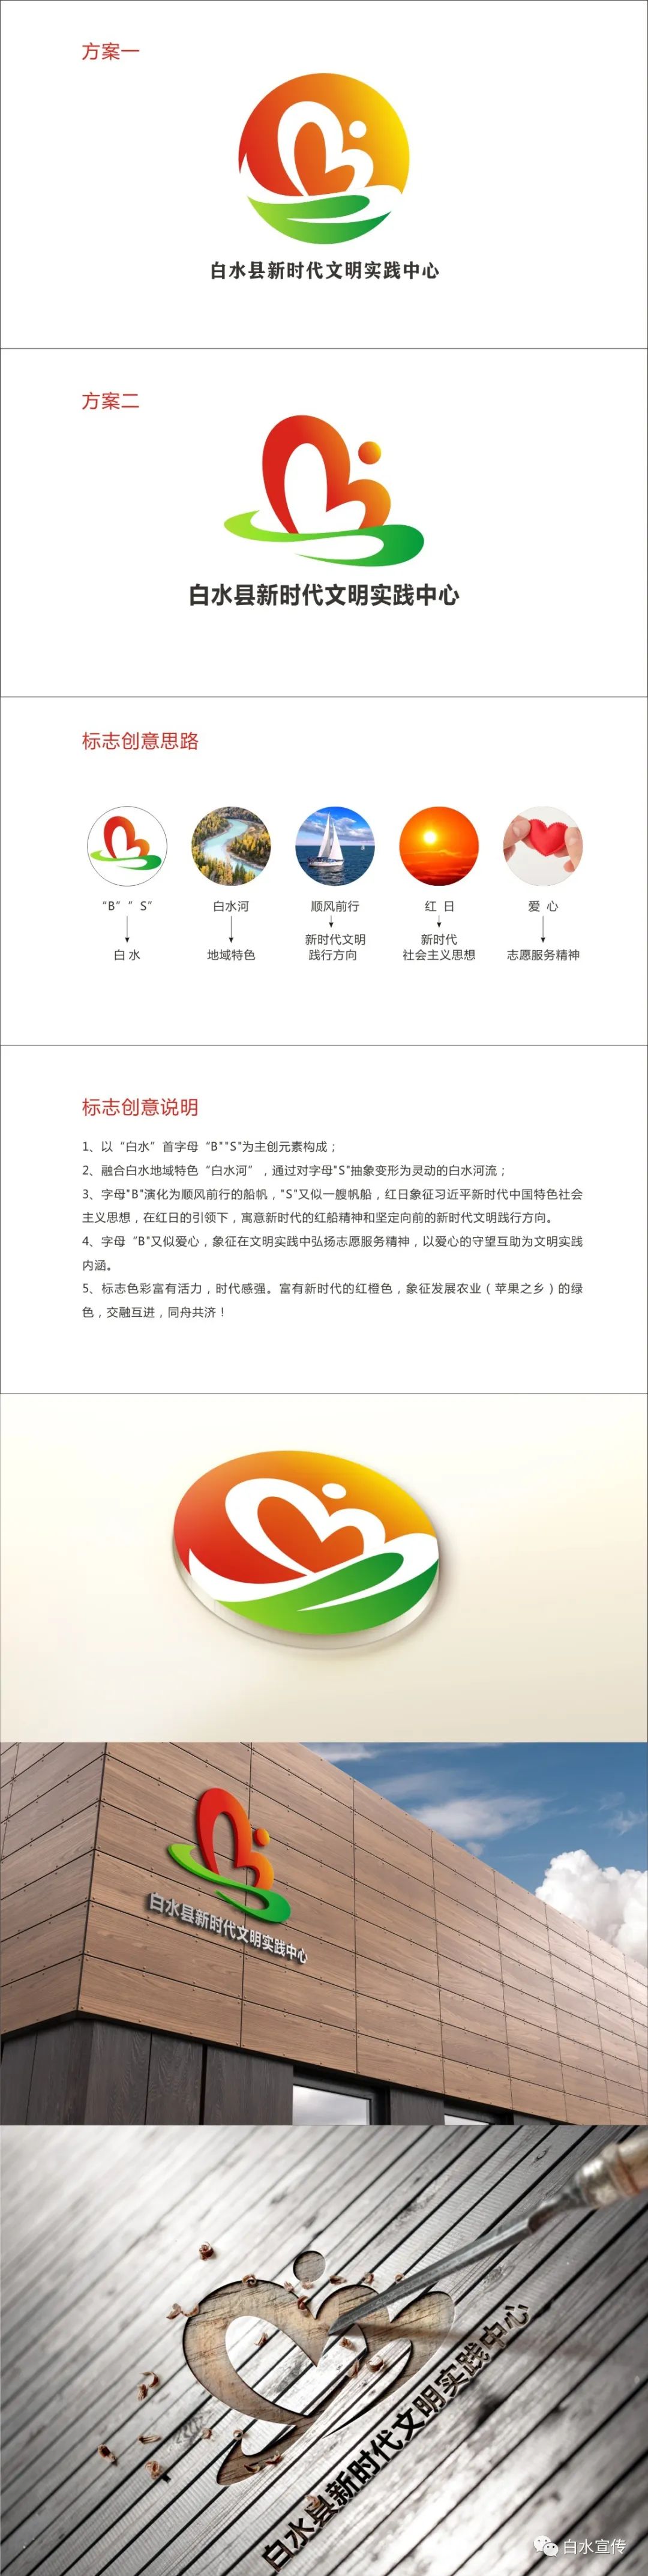 白水县新时代文明实践中心标识logo评选活动开始了